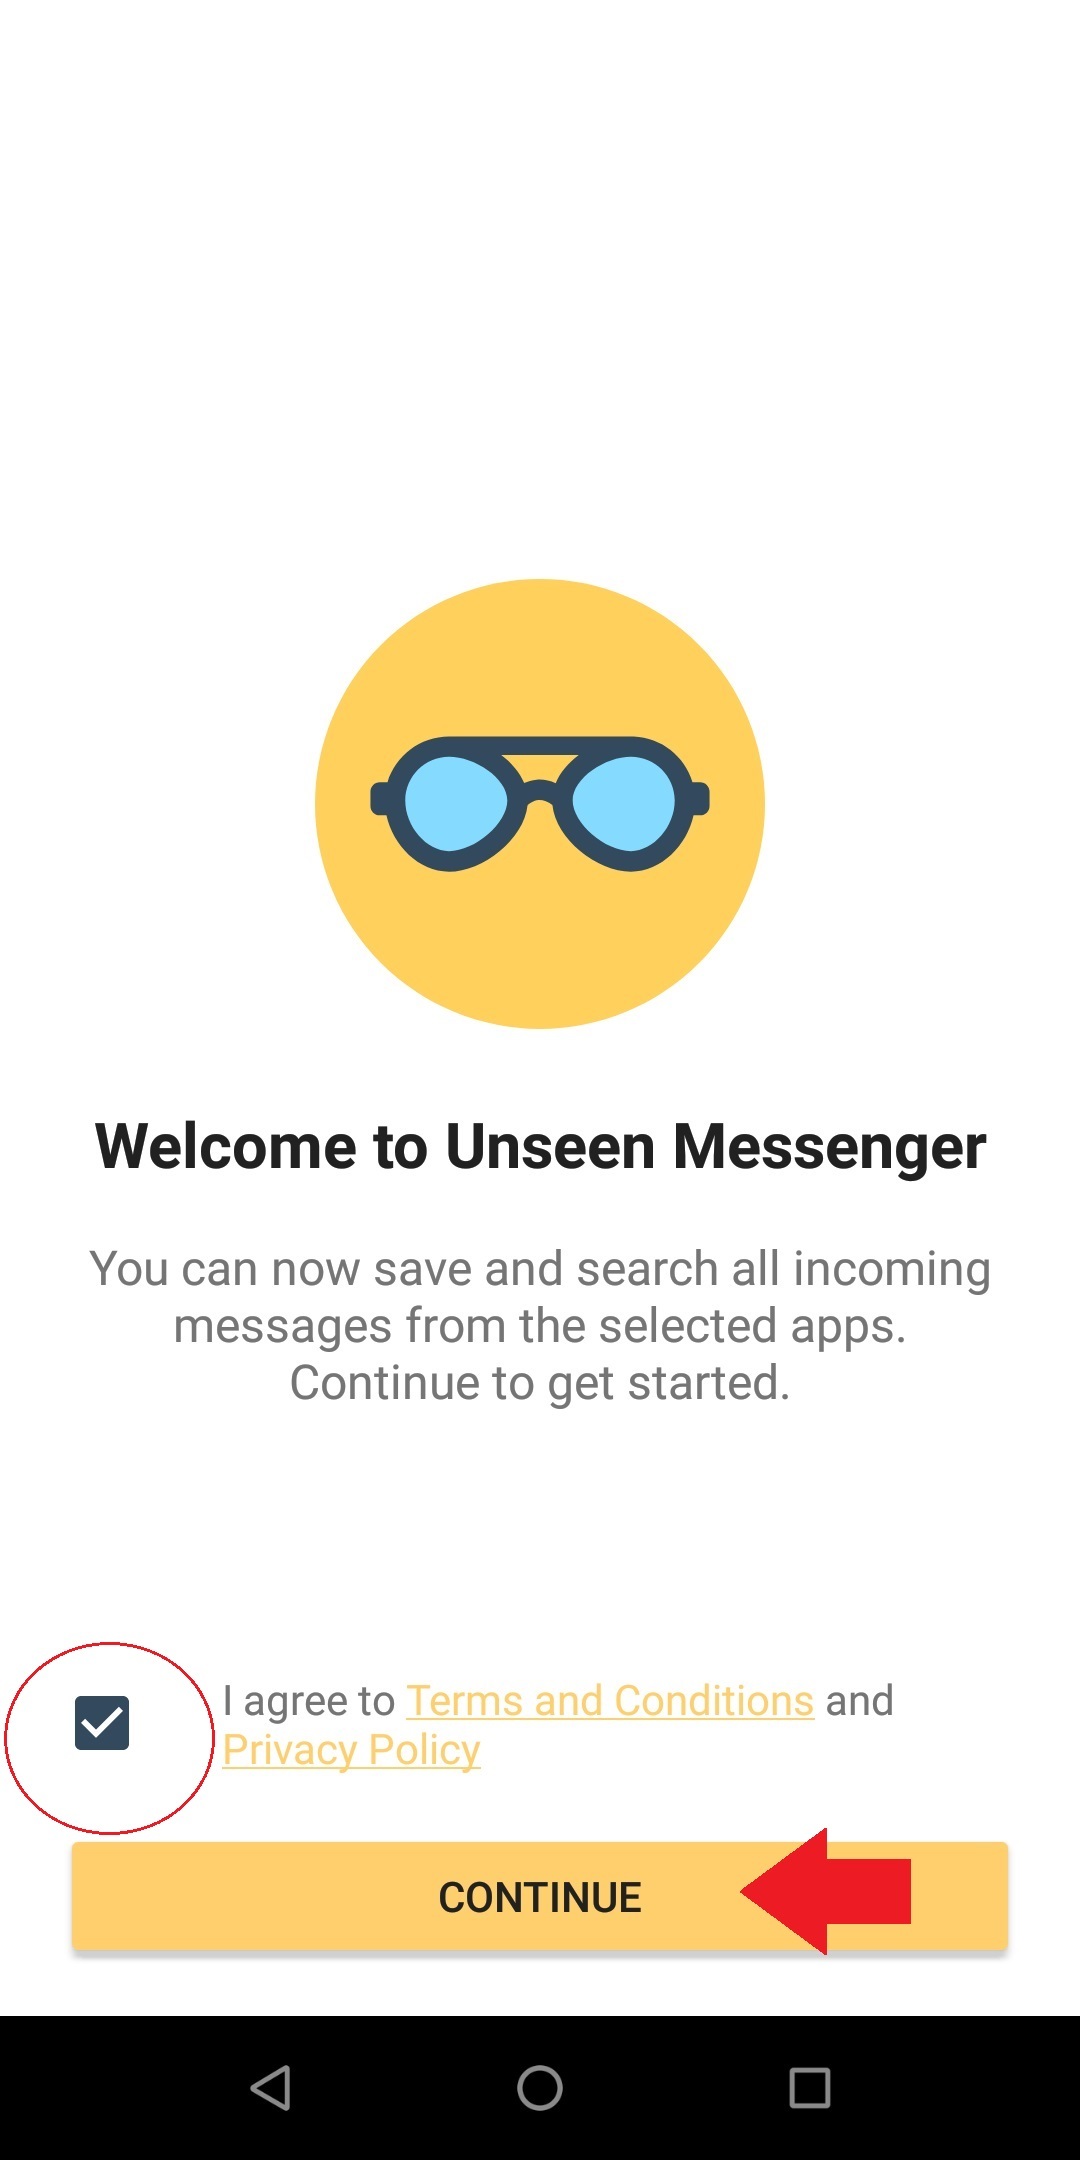 Hướng dẫn xem tin nhắn đã bị gỡ trên Messenger điện thoại Android